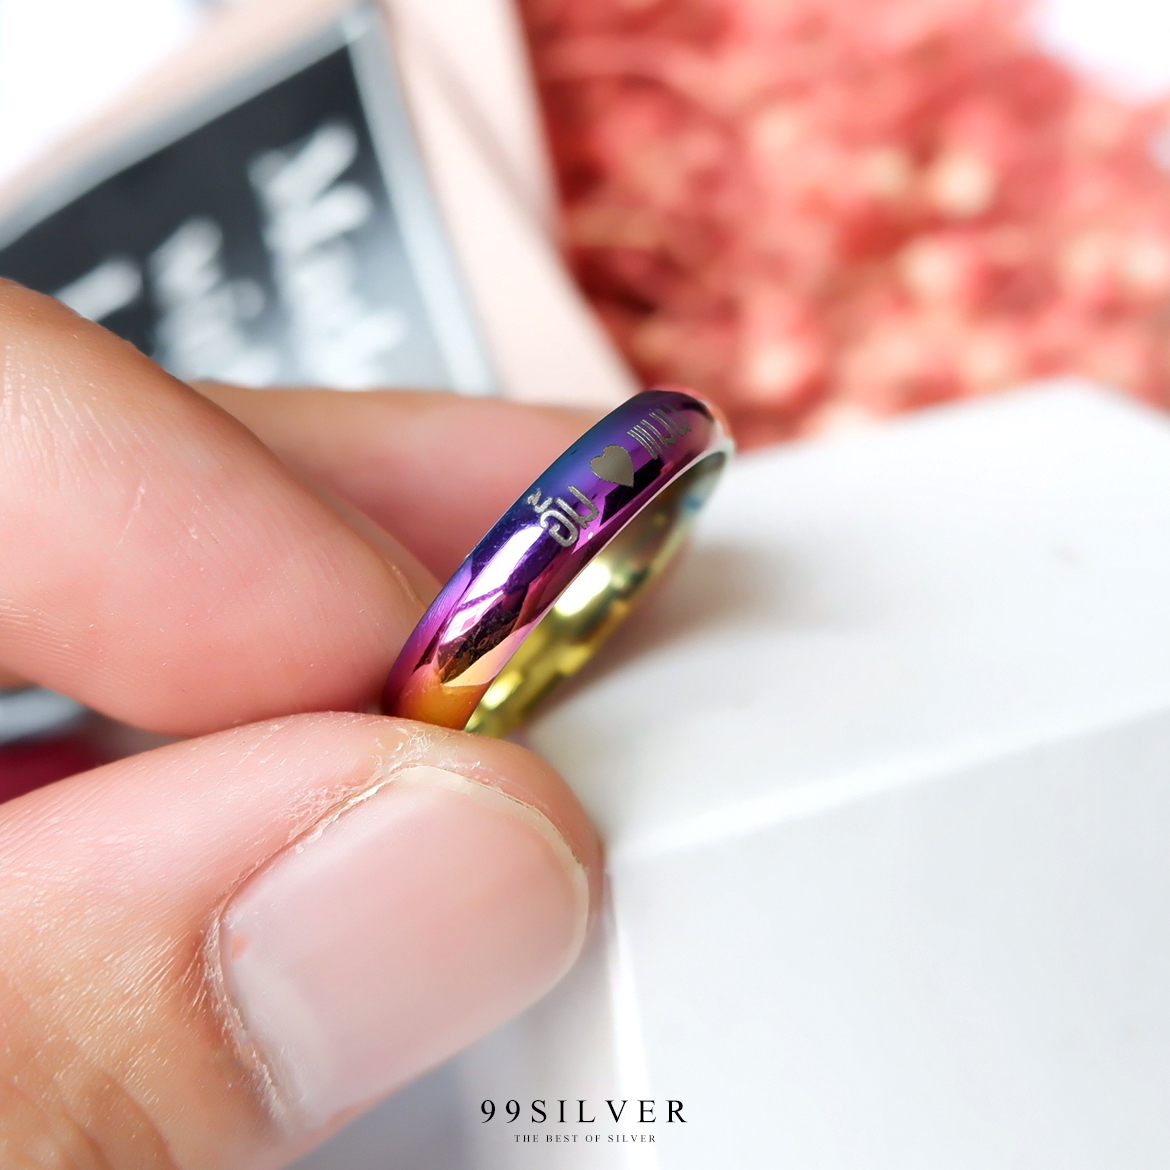 แหวนสแตนเลสไทเทเนี่ยมแท้ หน้ากว้าง 4 มิลลิเเมตร ผิวเงาโค้ง ไดร์ฟสีรุ้งไทเท